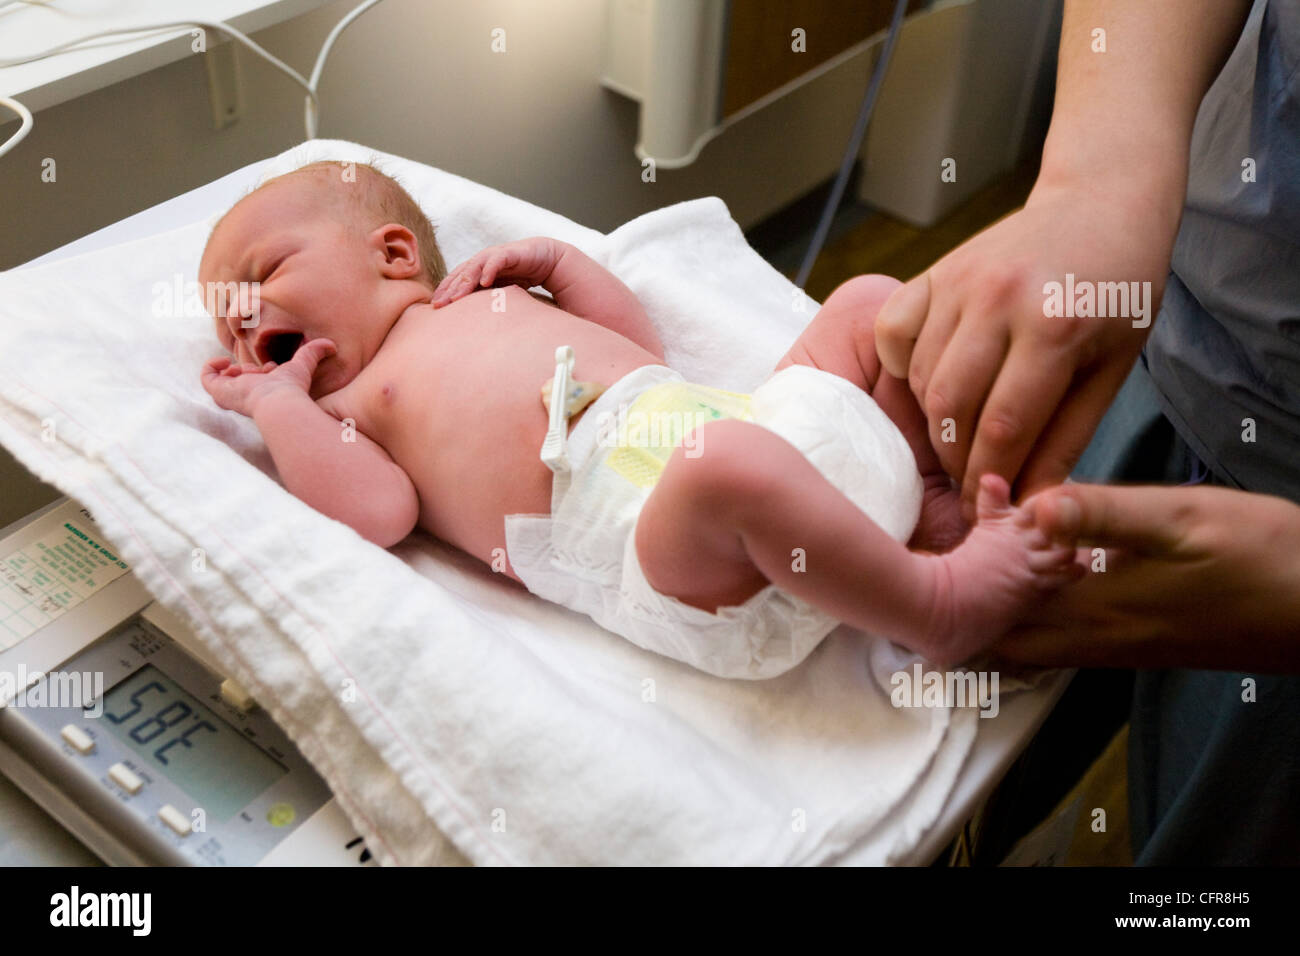 La levatrice 's mani eseguire un esame fisico health check test test sul neonato / new born baby dopo parto / essendo nato il Regno Unito Foto Stock